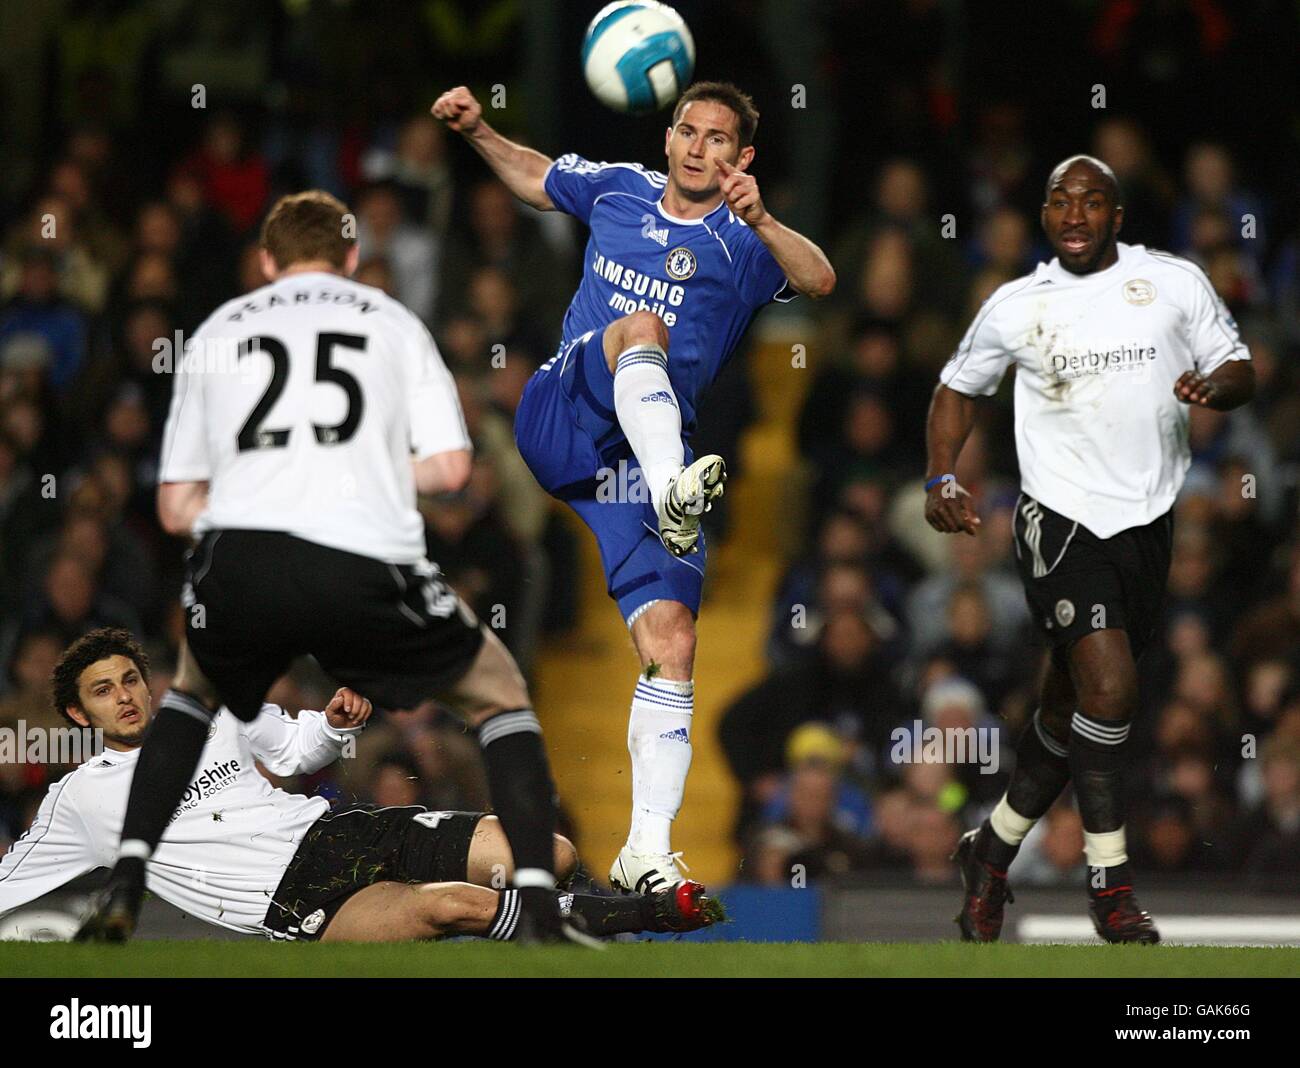 Fútbol - Barclays Premier League - Chelsea contra Derby - Stamford Bridge. Frank Lampard del Chelsea en acción. Foto de stock